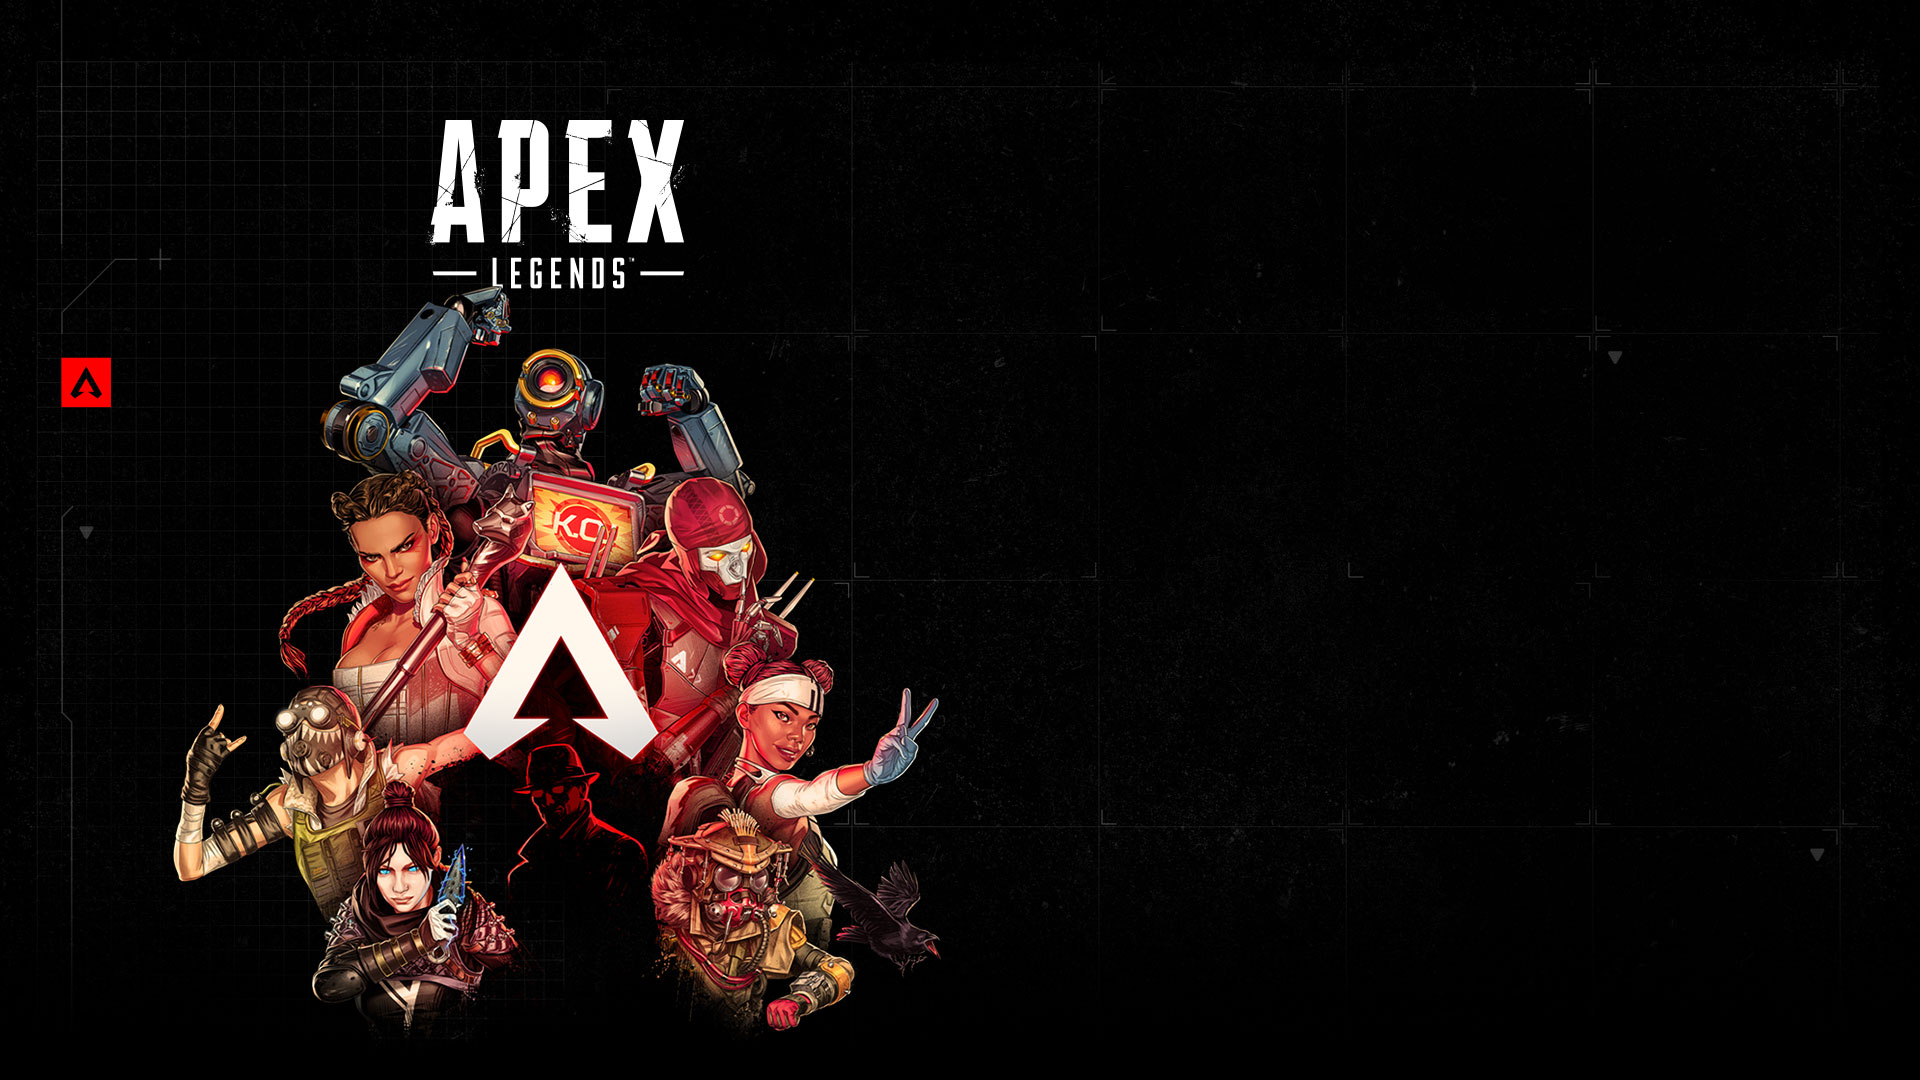 Apex Legends, sept légendes posent autour du logo Apex Legends.